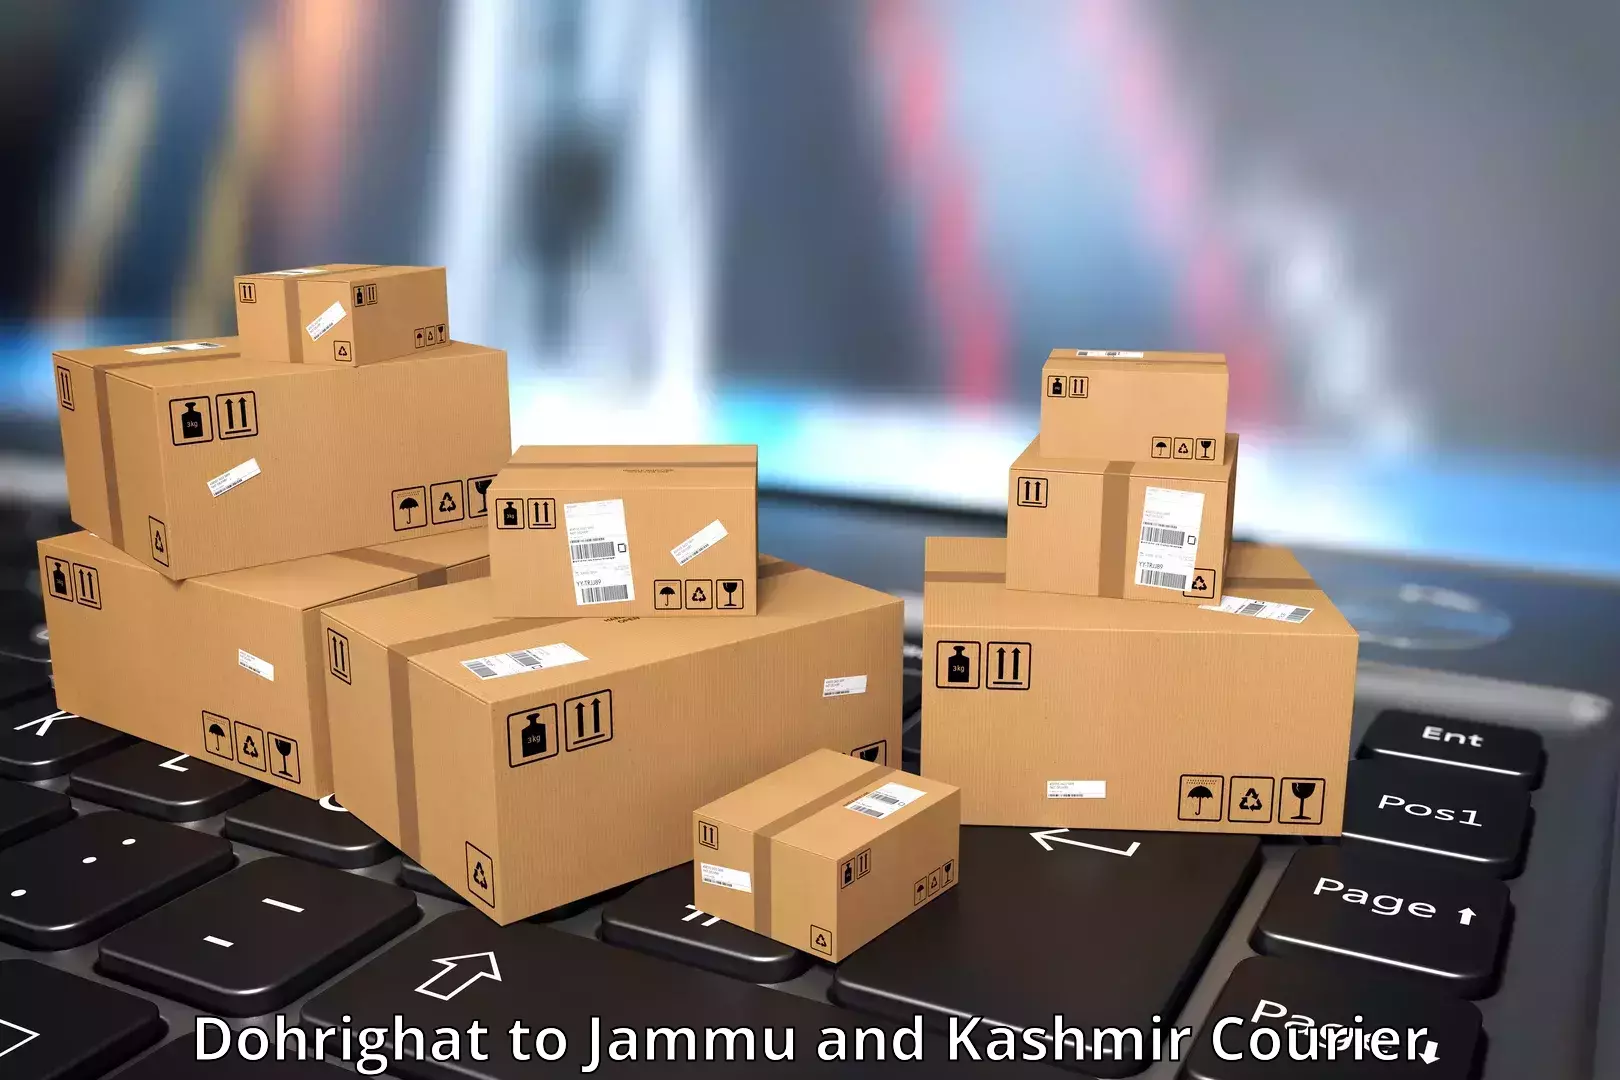 24-hour delivery options Dohrighat to Srinagar Kashmir